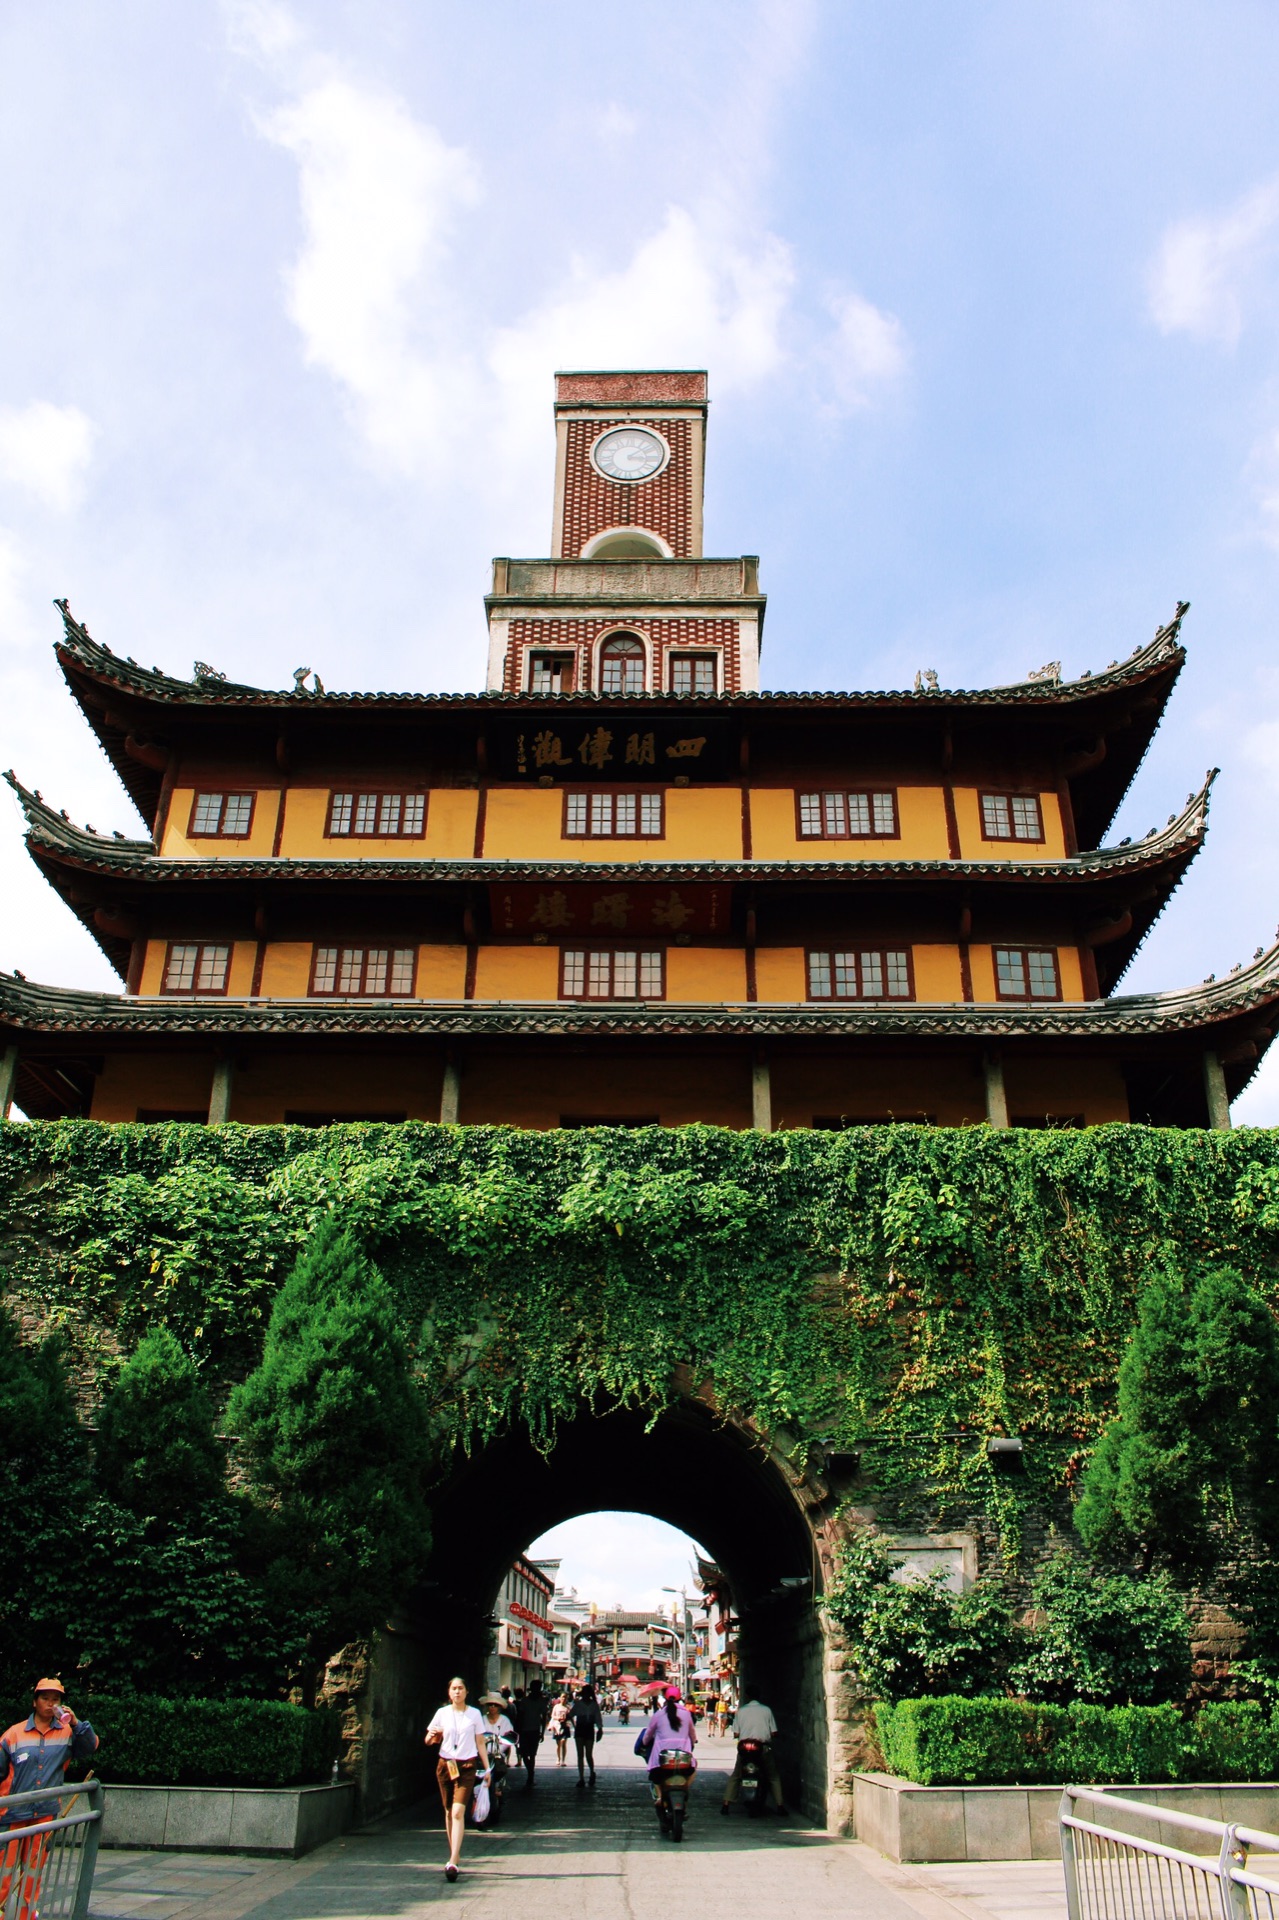 宁波鼓楼又名海曙楼,是浙江省宁波市境内仅存的古城楼遗址,位于宁波